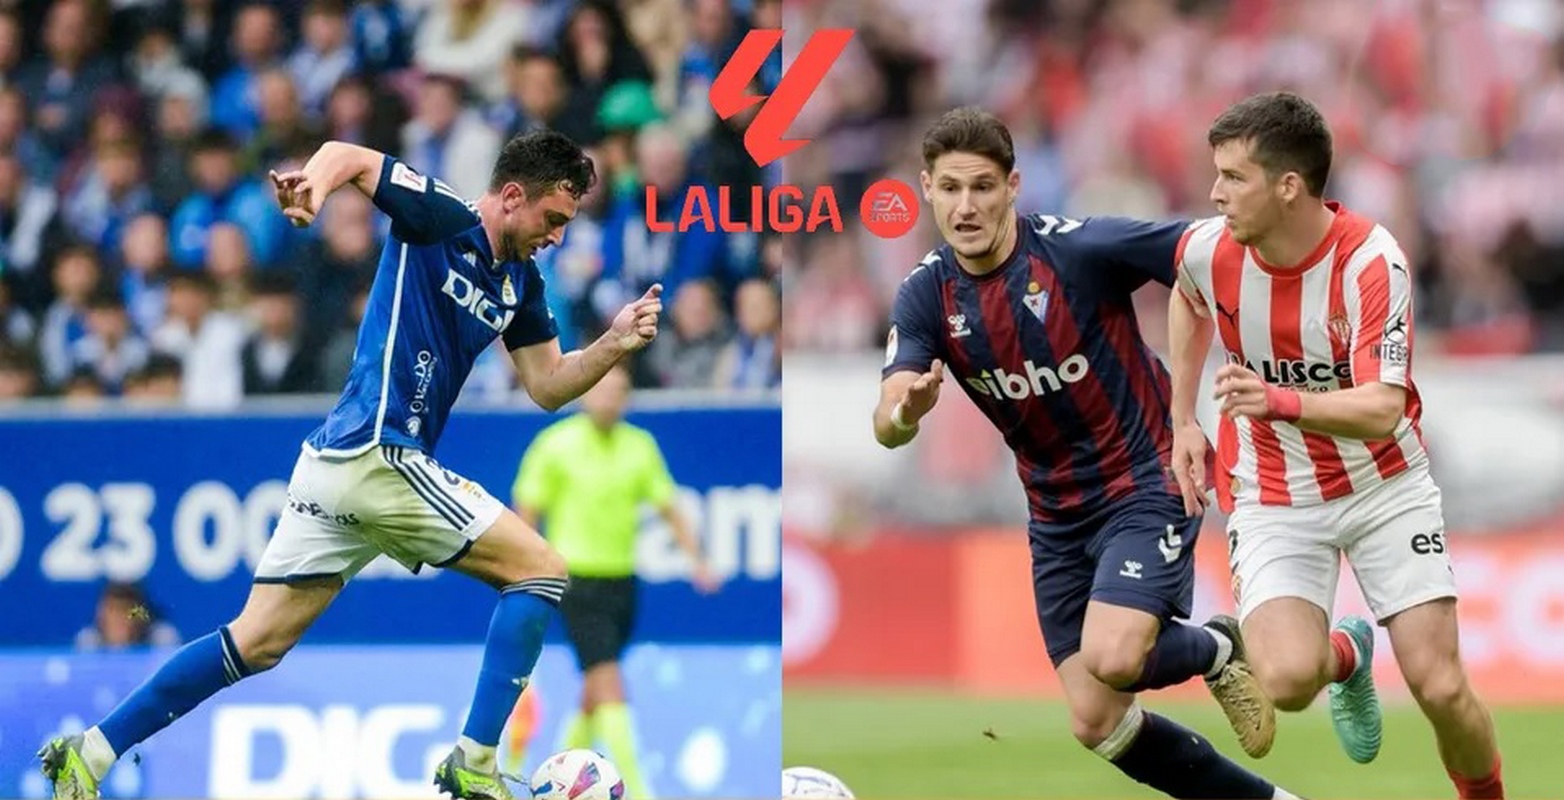 Oviedo de Grupo Pachuca y Gijón de Orlegi, con opciones de playoff por ascenso a LaLiga